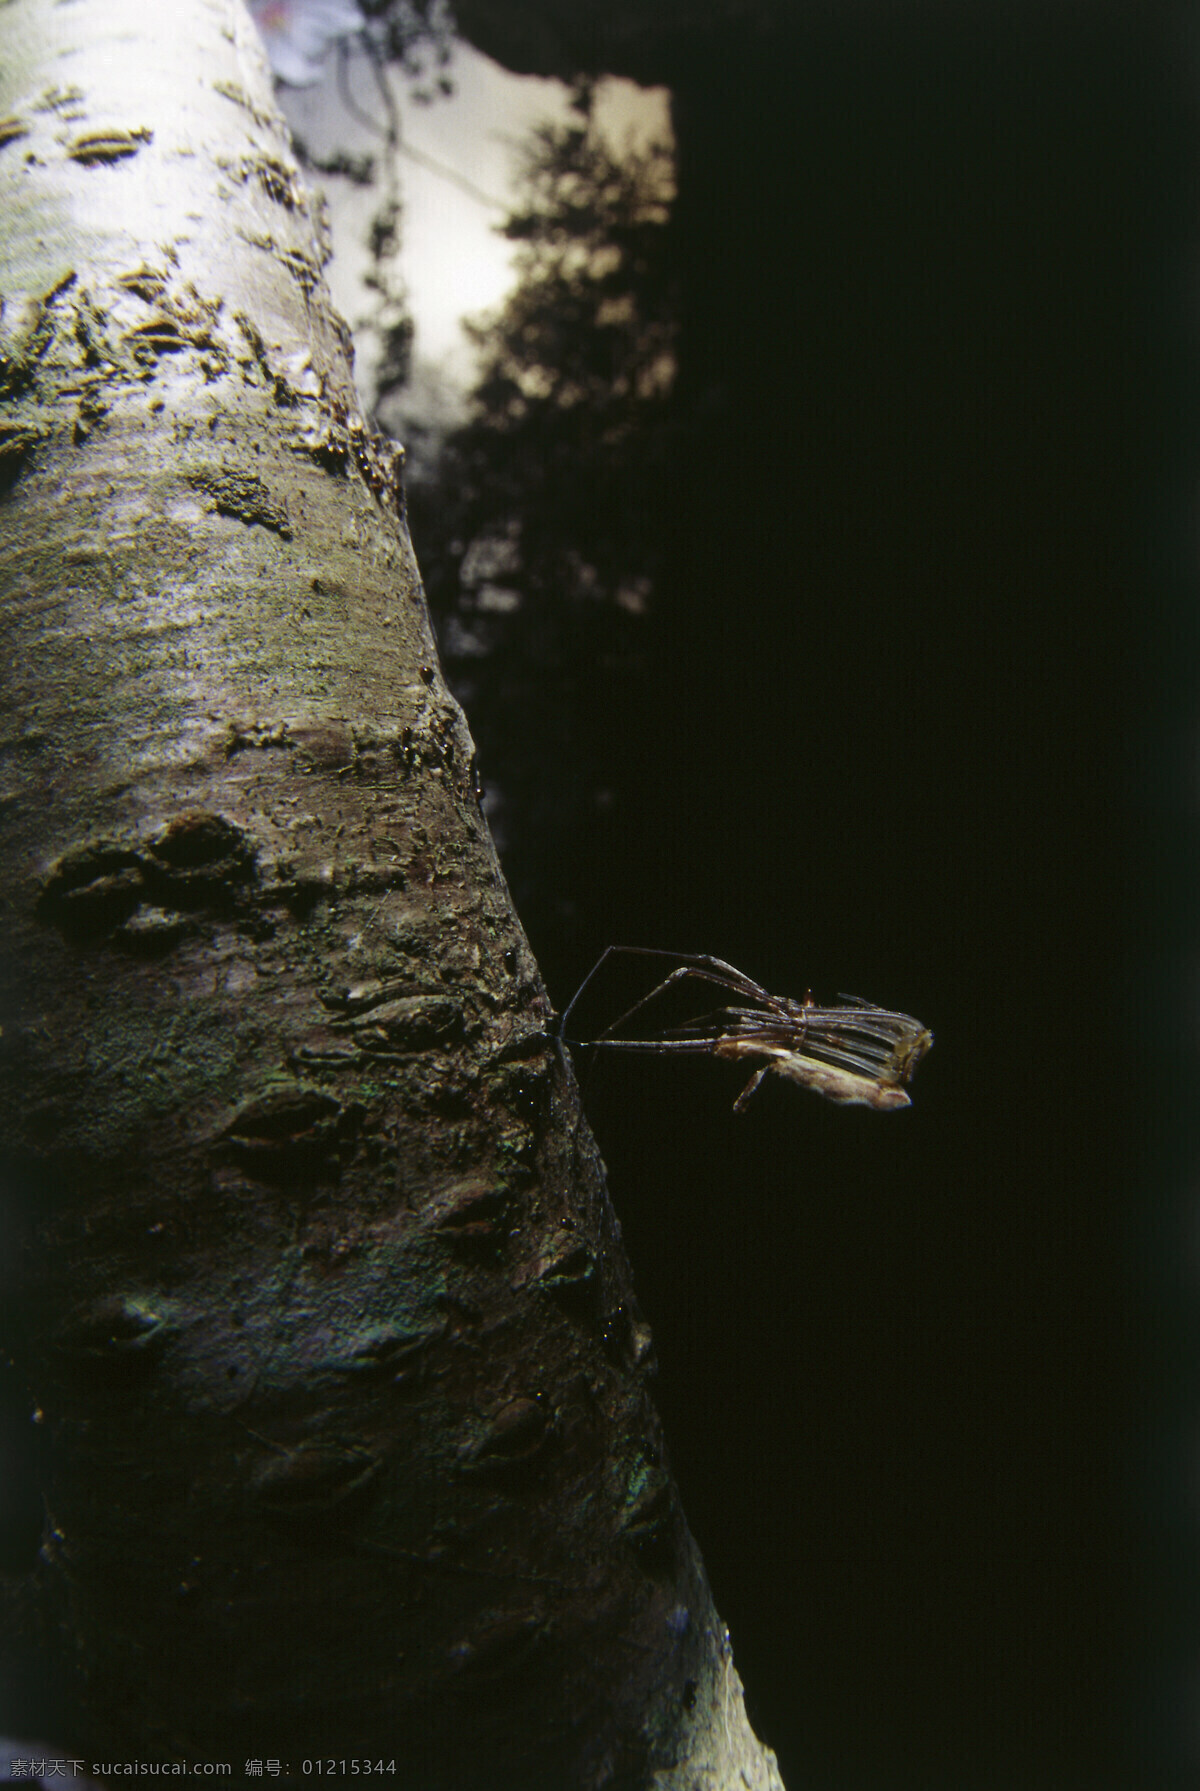 树 杆 上 昆虫 树杆 树枝 昆虫摄影 动物 动物素材 自然 自然风光 大自然 森林 草 图片背景 田野 野外 山水风景 风景图片